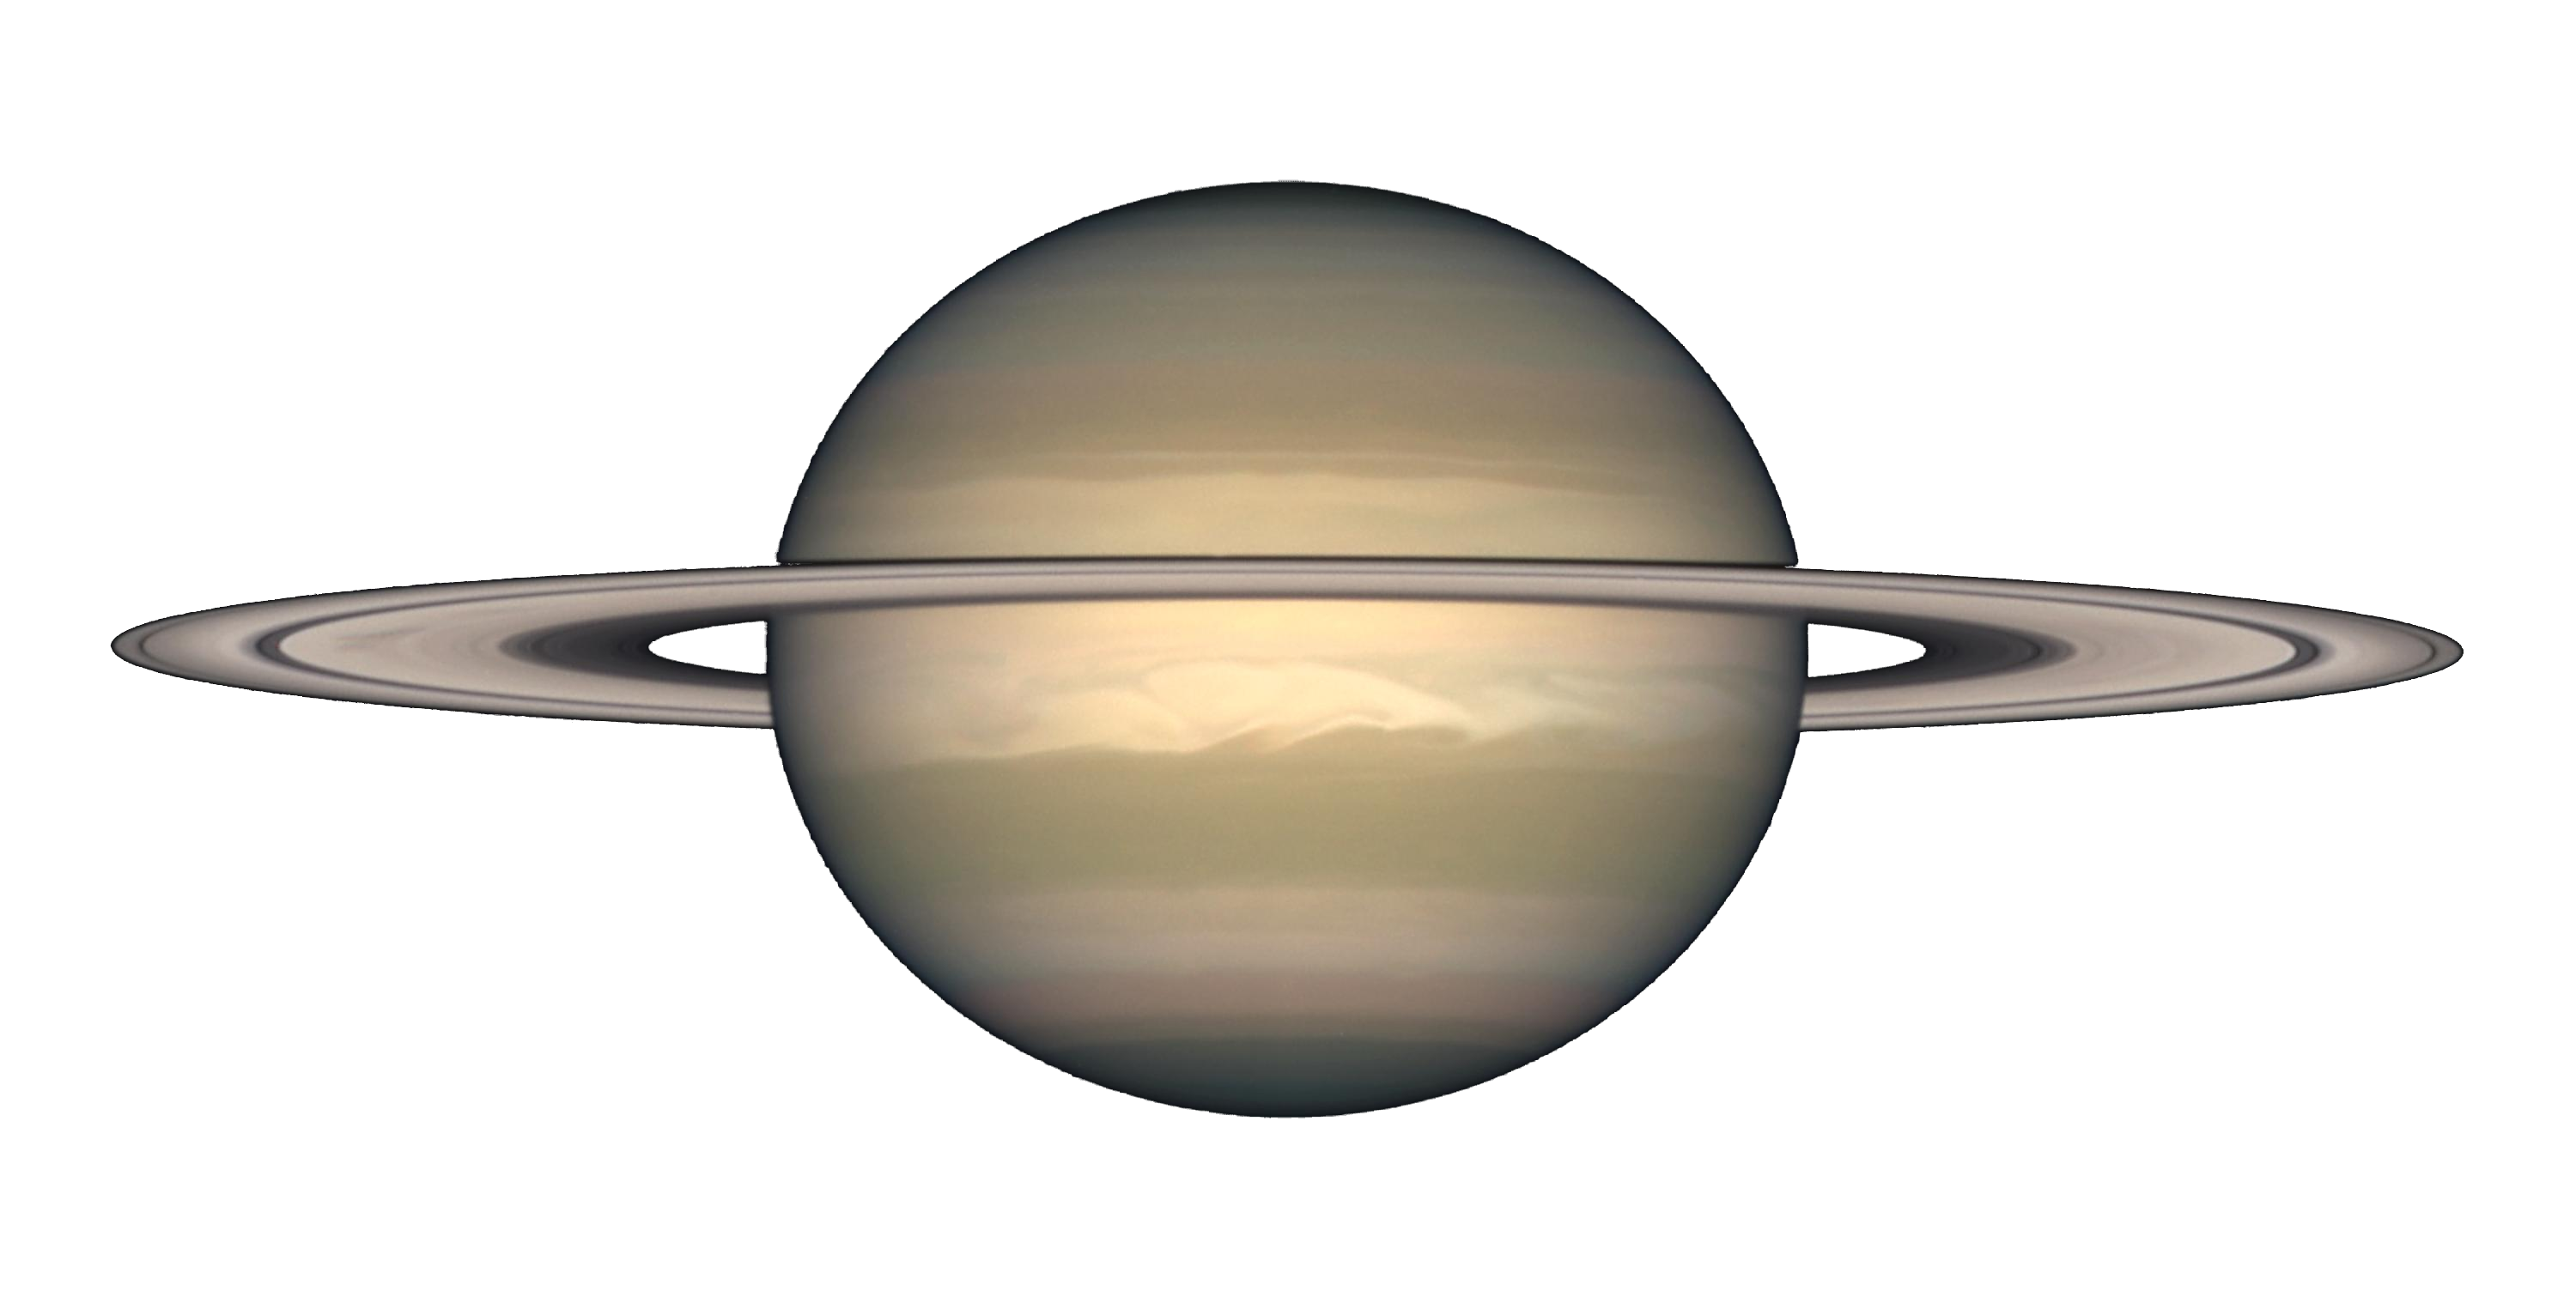 Saturne PNG image